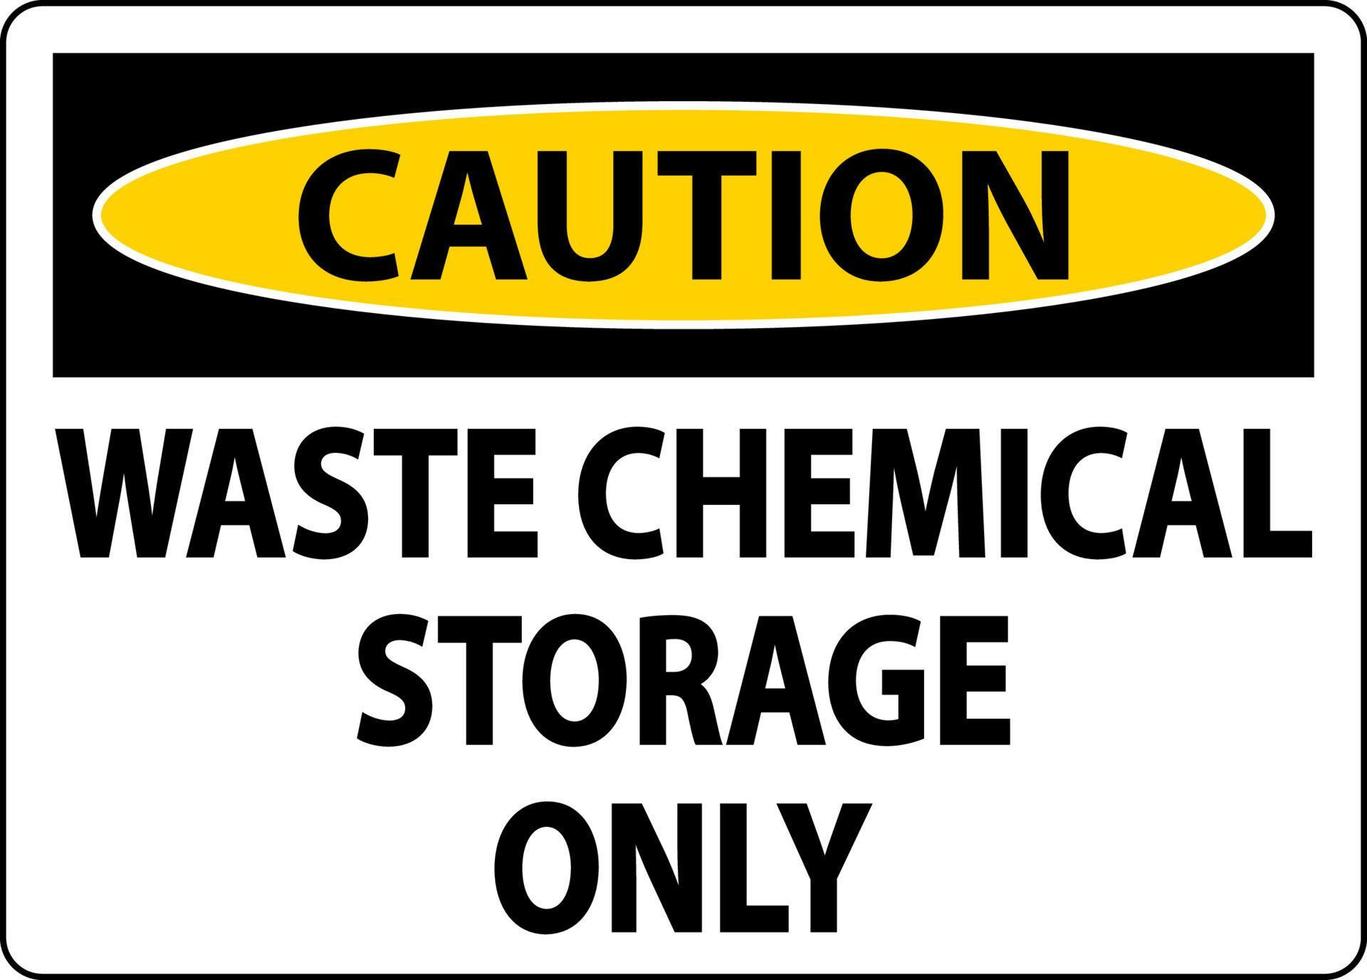 Precaución Etiqueta de almacenamiento de productos químicos de desecho solamente vector